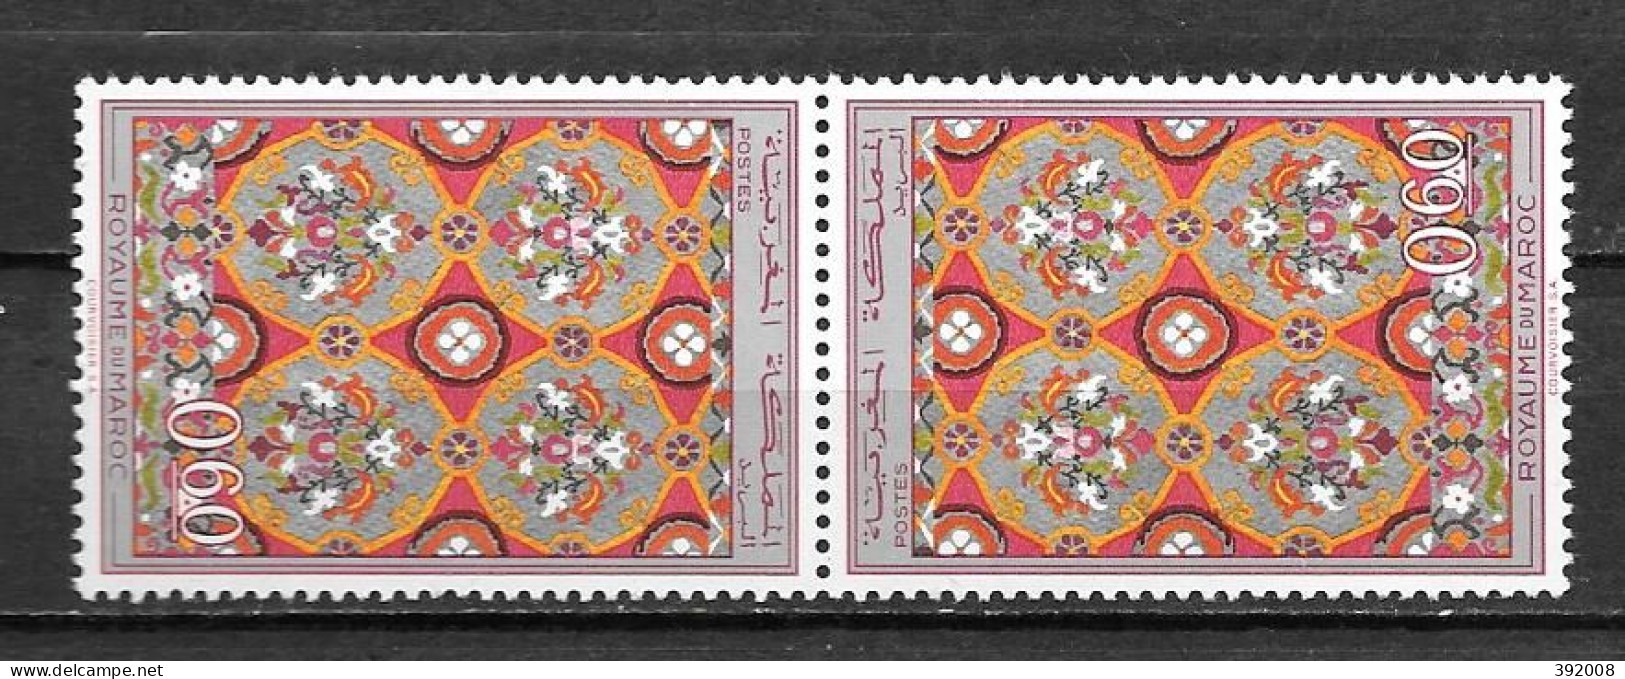 1968 - N° 563A** MNH - Artisanat, Ceinture De Fes - Morocco (1956-...)